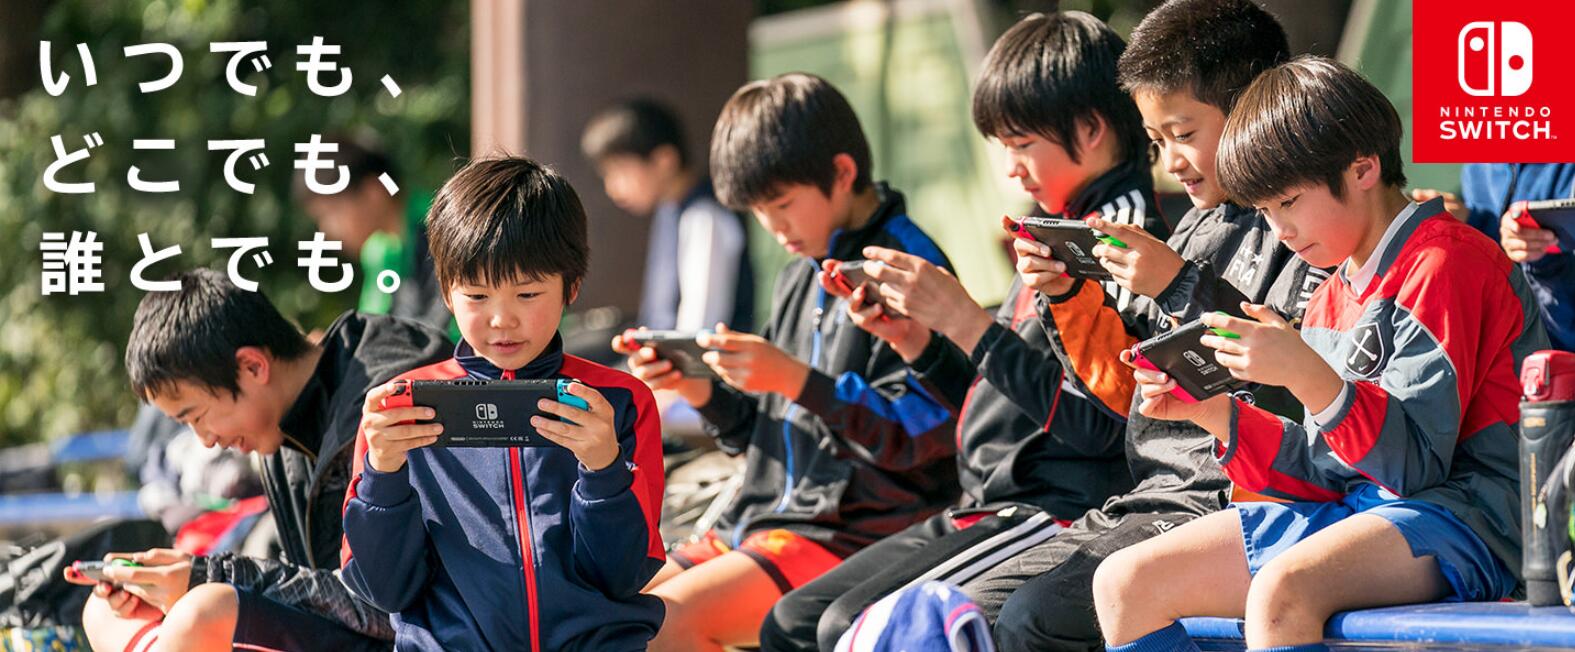 任天堂宣布Switch全球总销量已经突破一千万台 年末 大作 ii 游戏机 11月1 销量 任天堂 新闻资讯  第1张